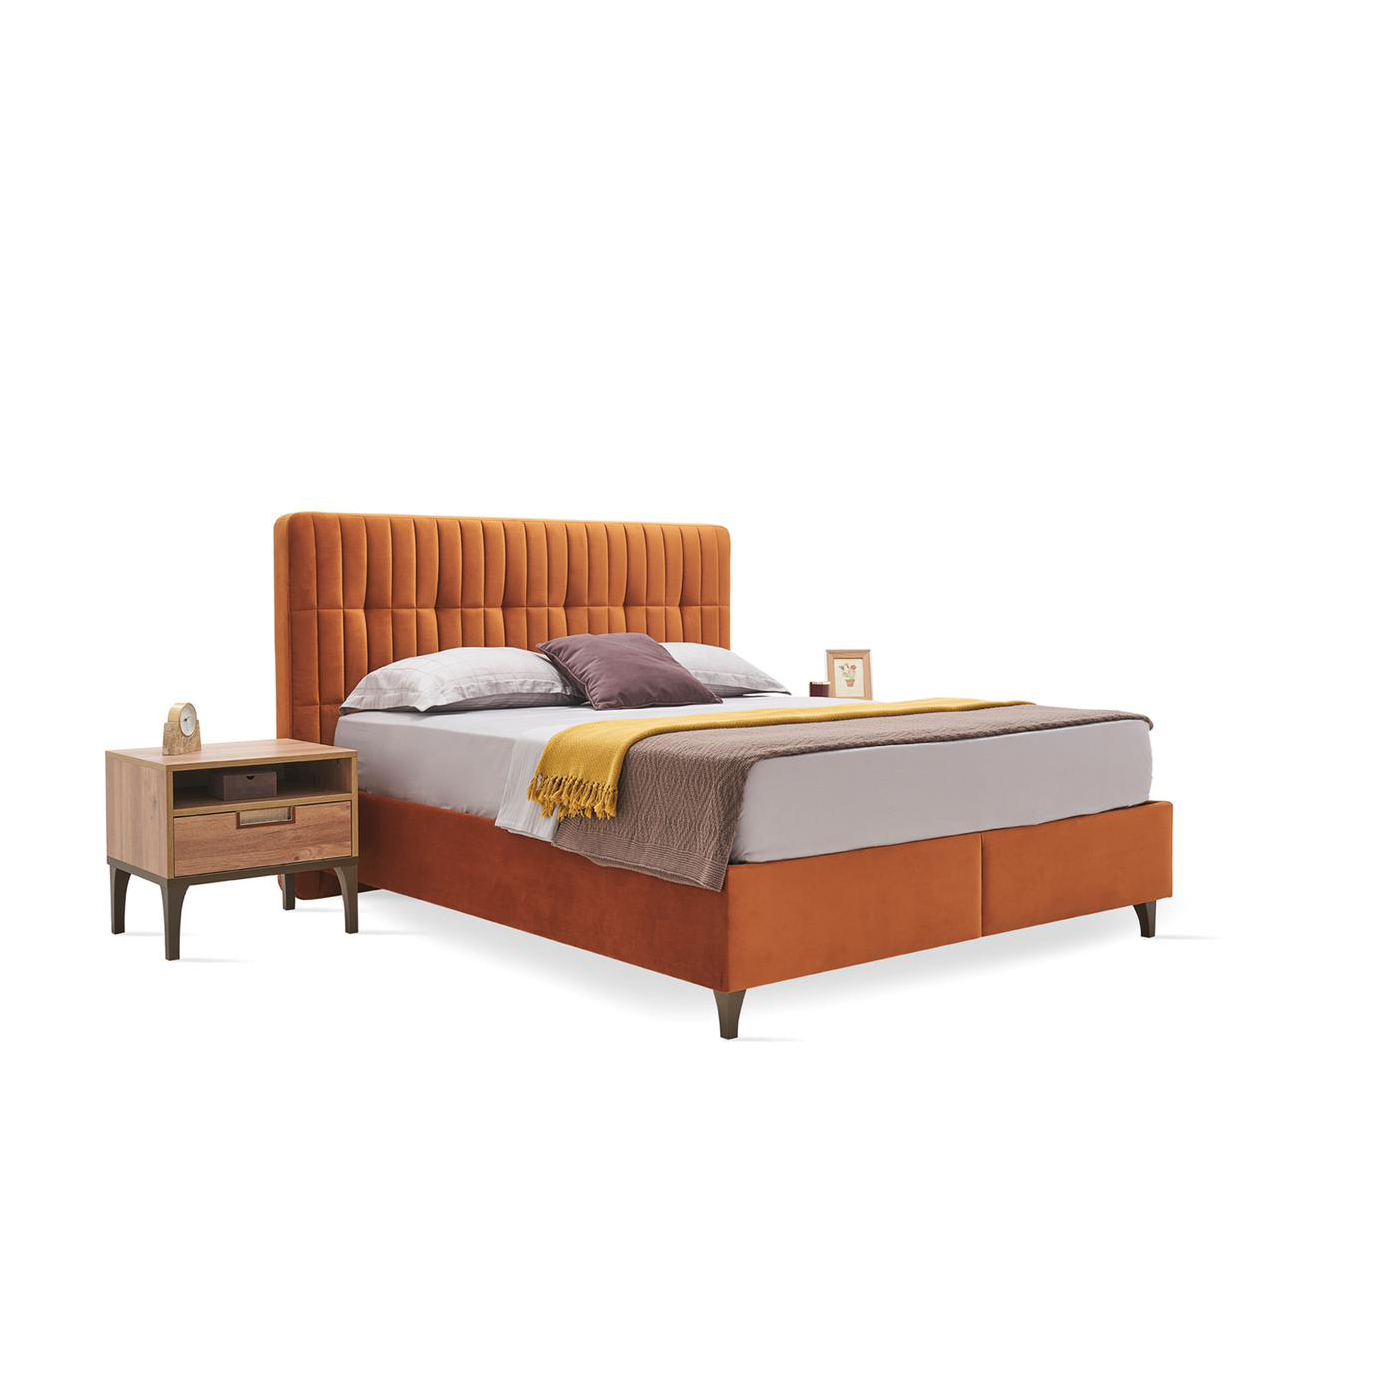 Кровать Enza Home Sona, полуторная, с подъемным механизмом, 150х200 см